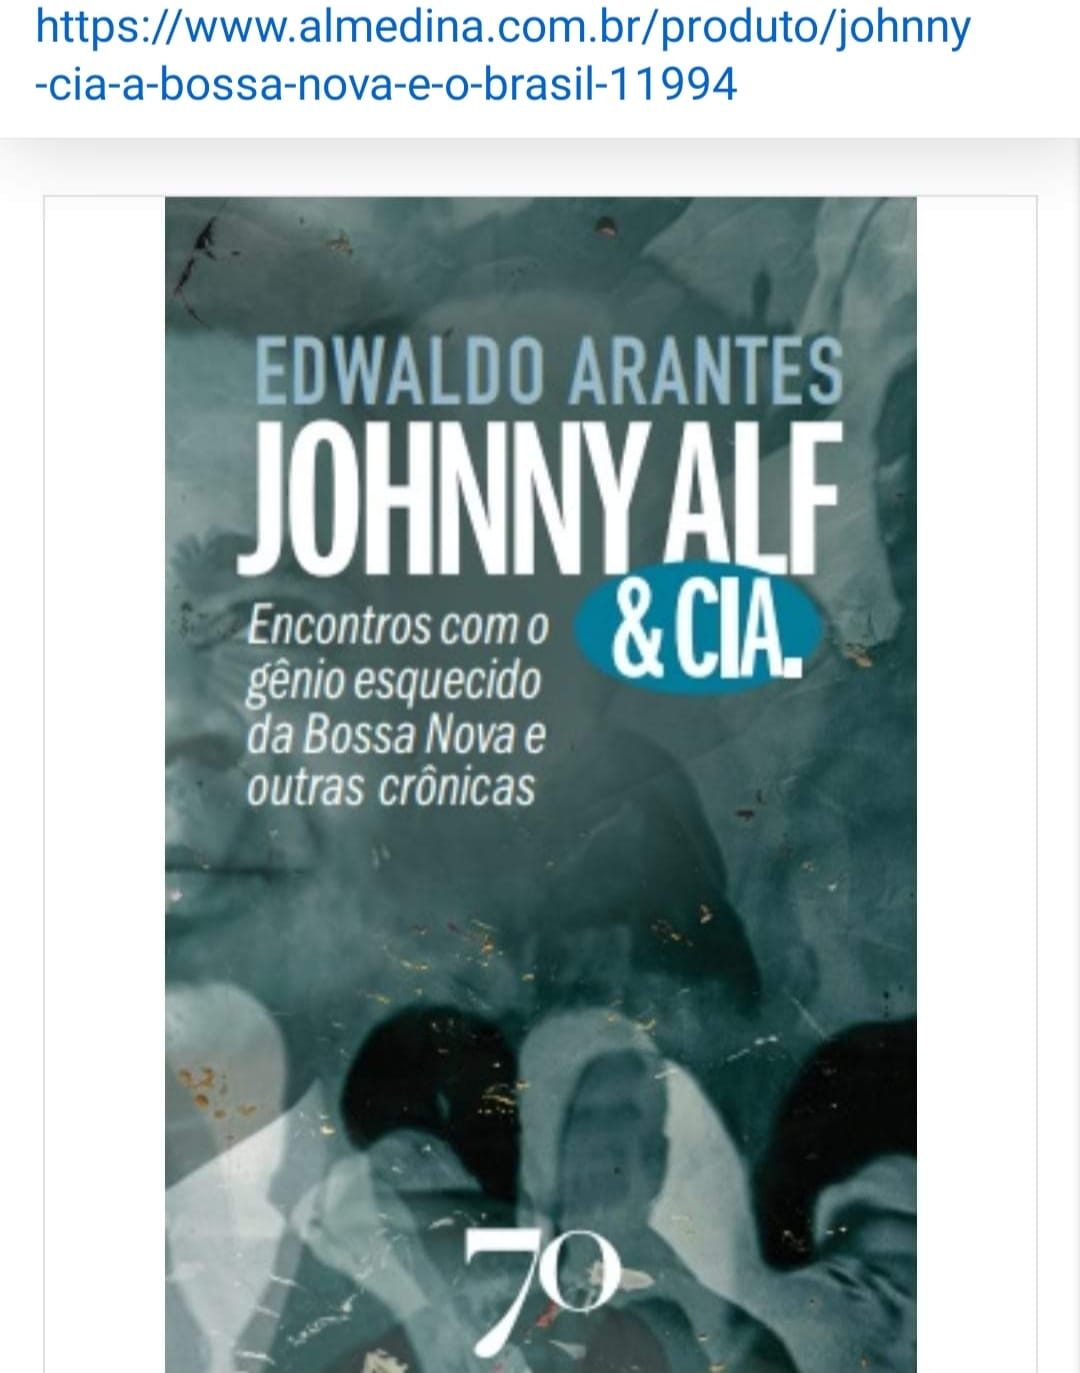 JOHNNY ALF & CIA EM LIVRO